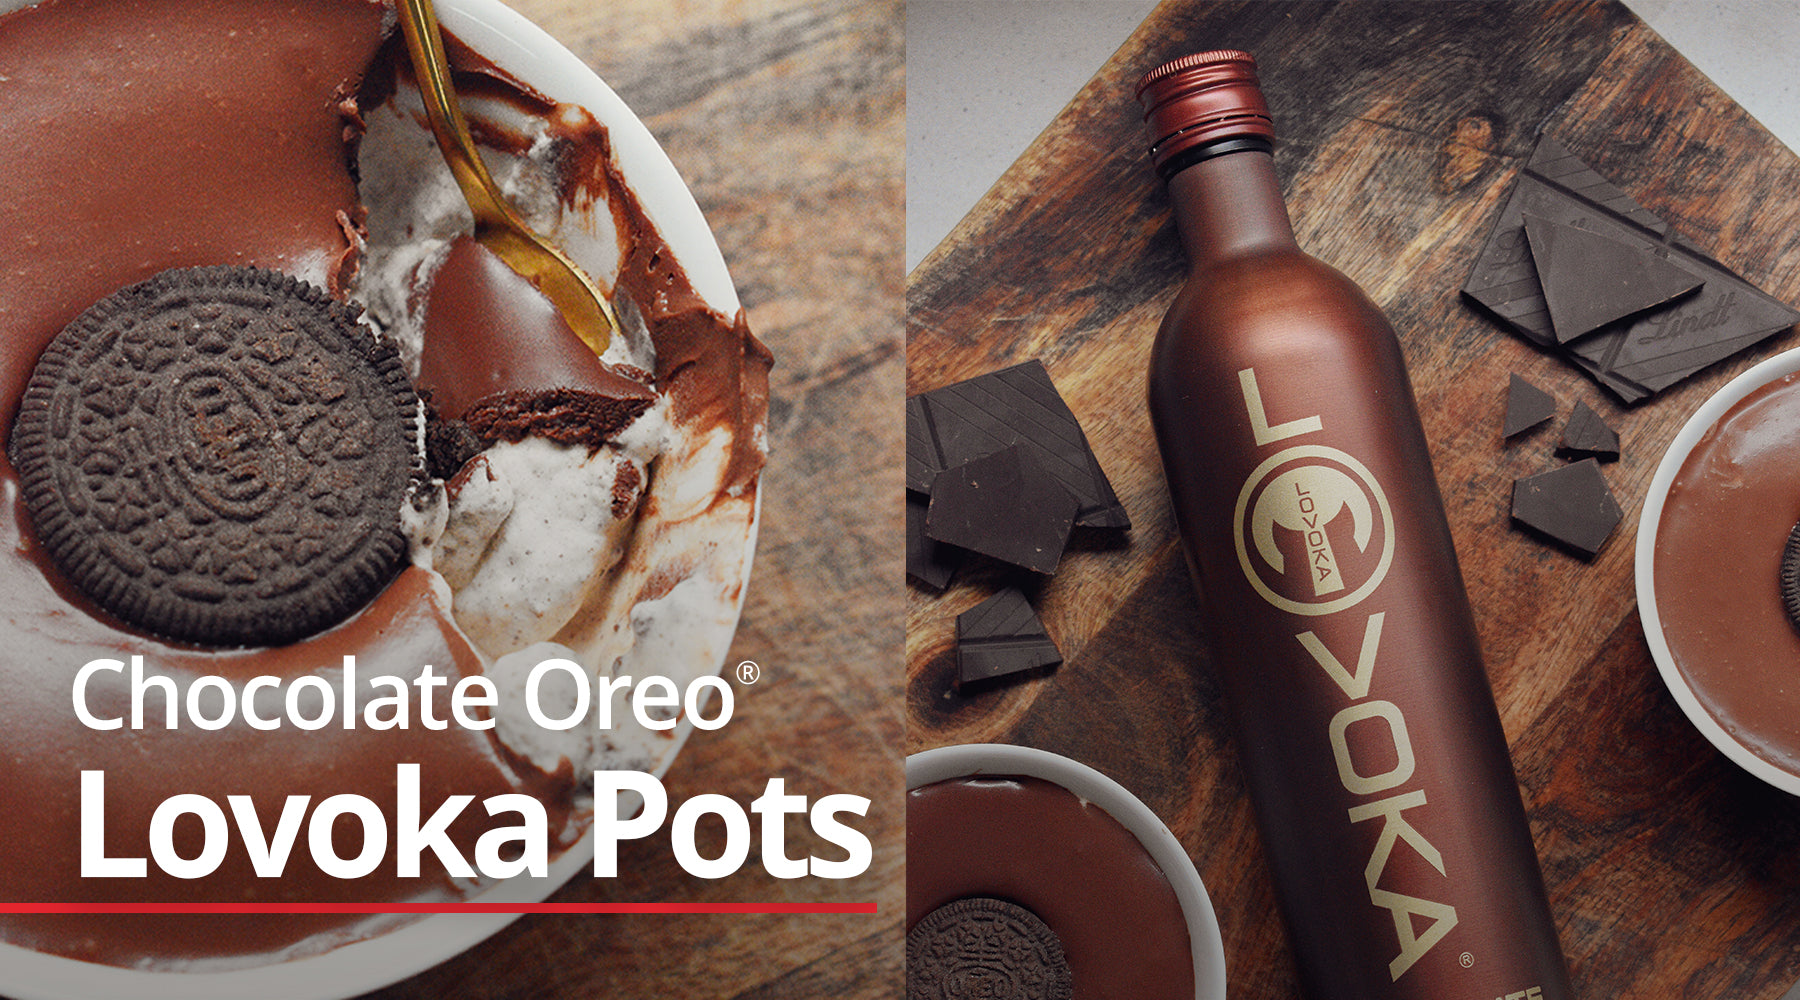 Chocolate Oreo Lovoka Pots